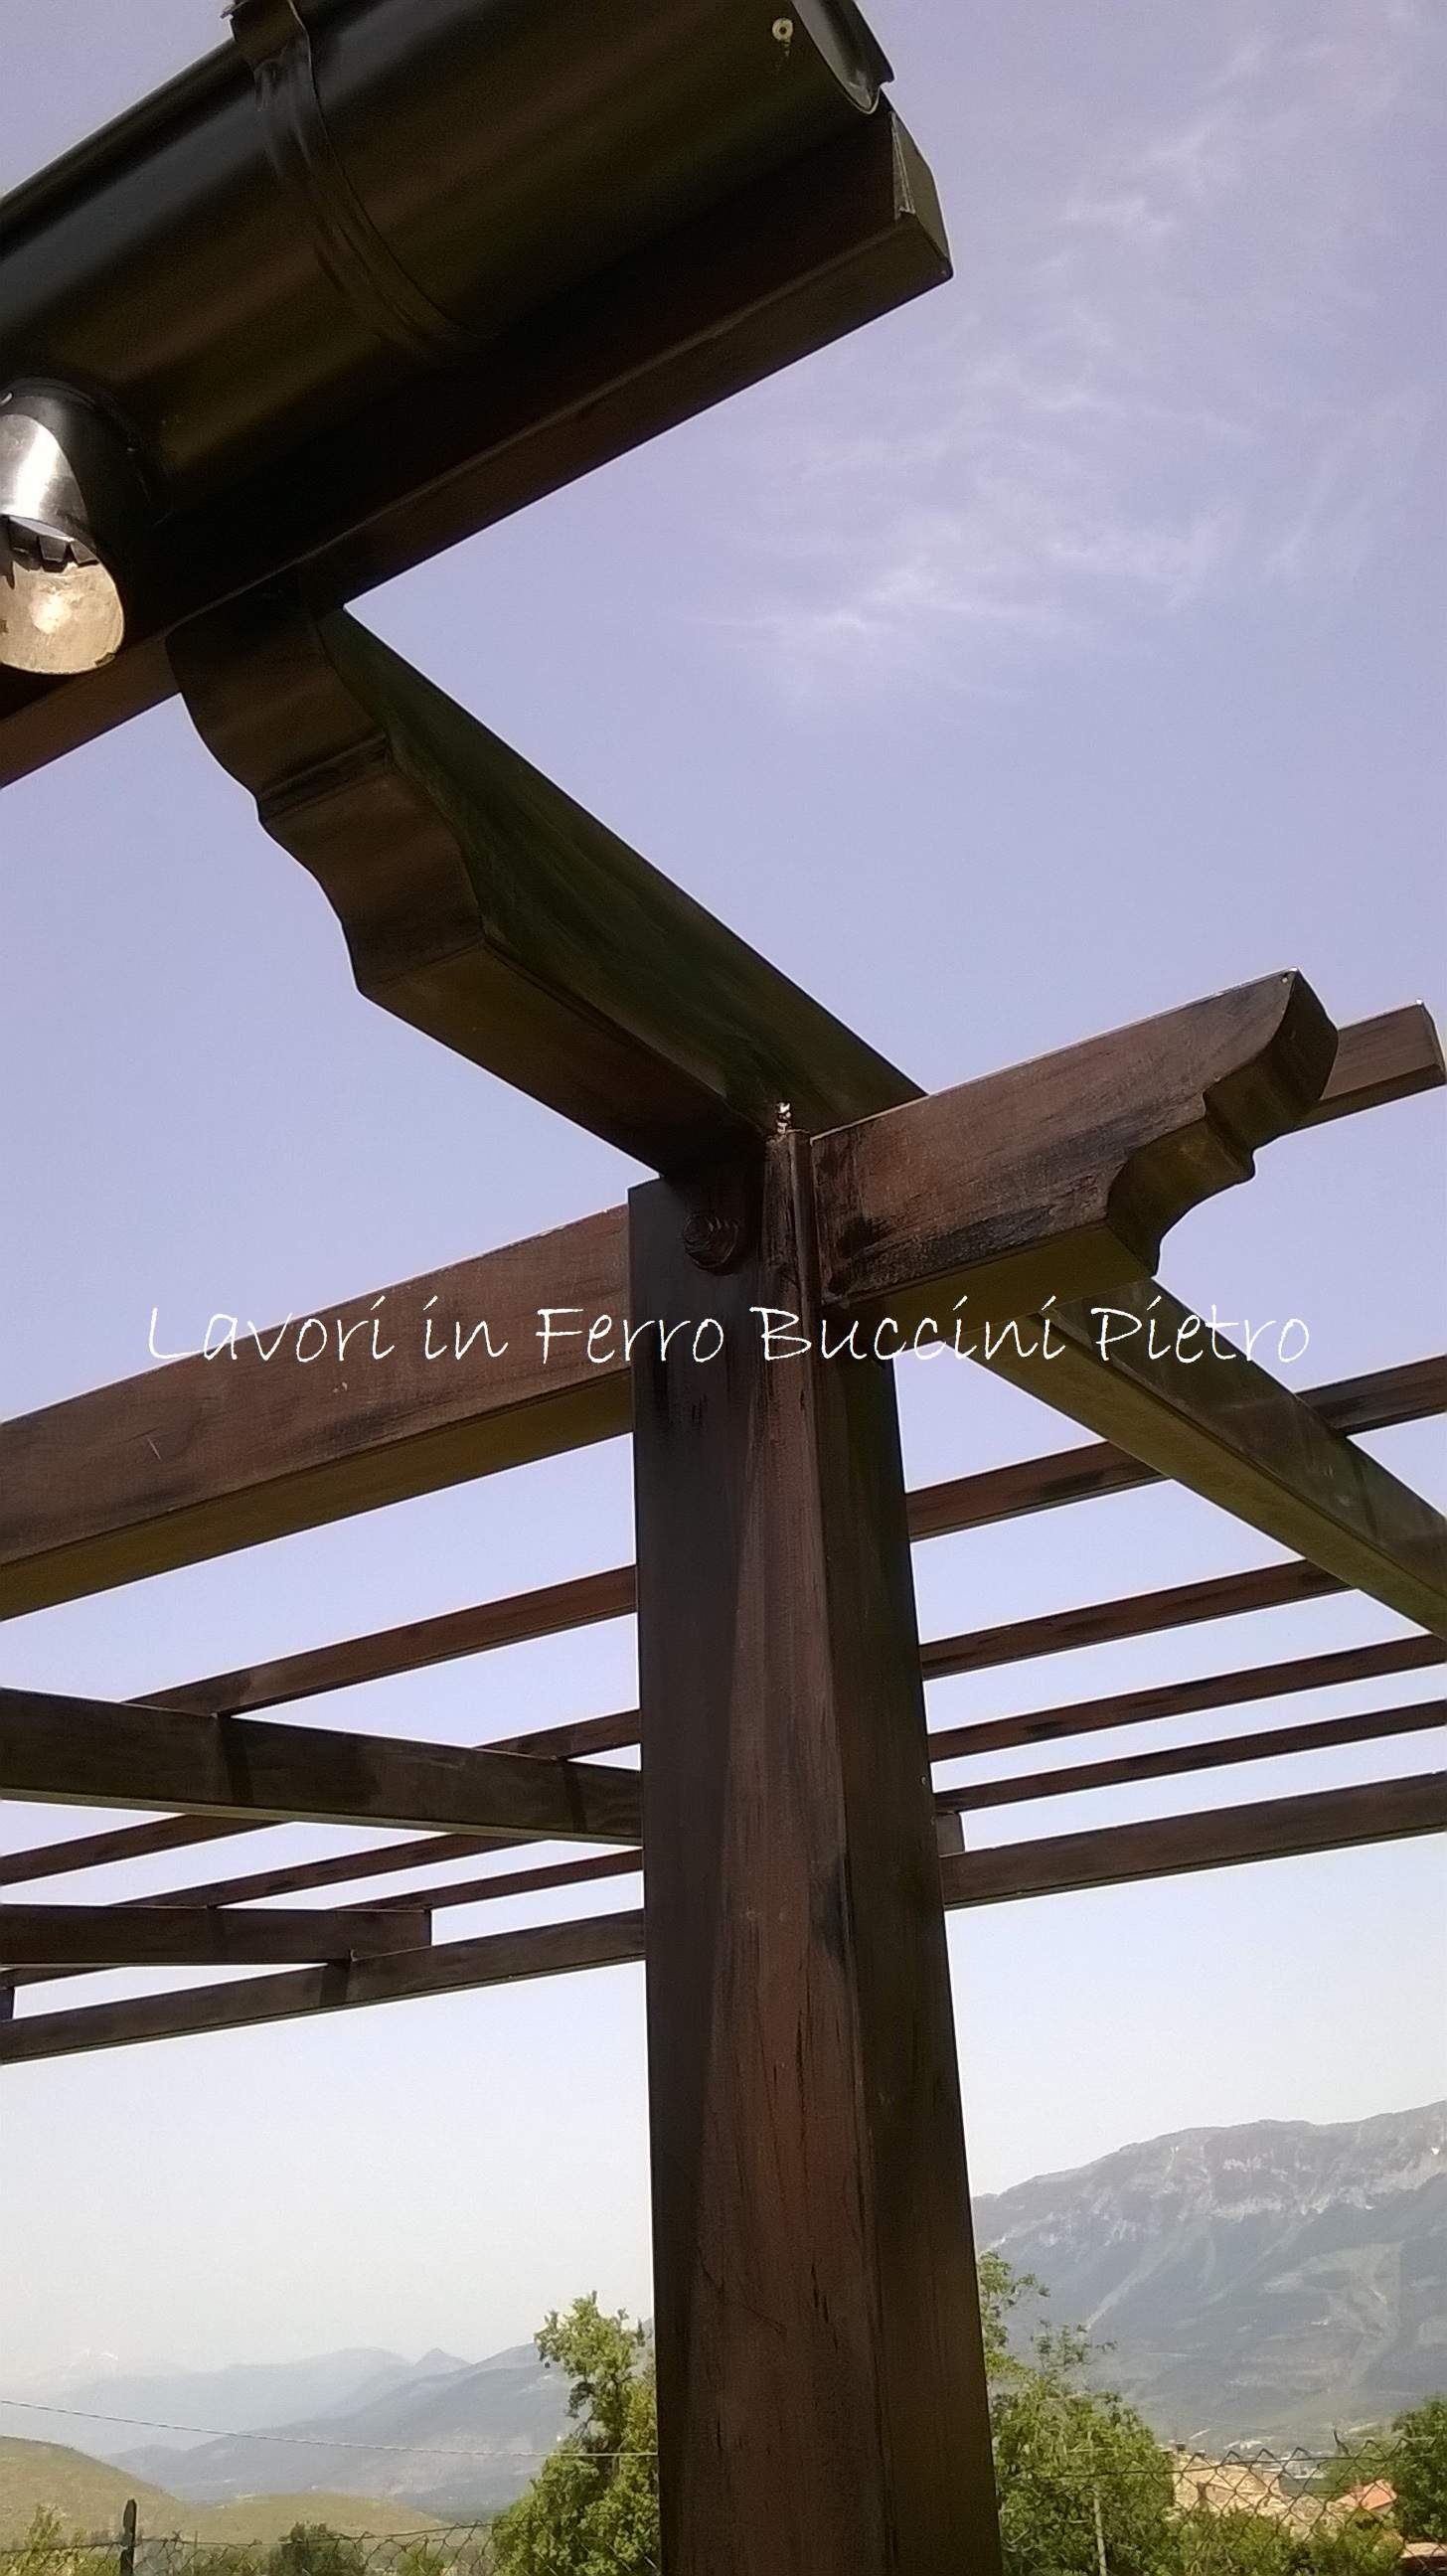 Struttura in ferro per tettoia, realizzata in ferro, in stile finto legno.